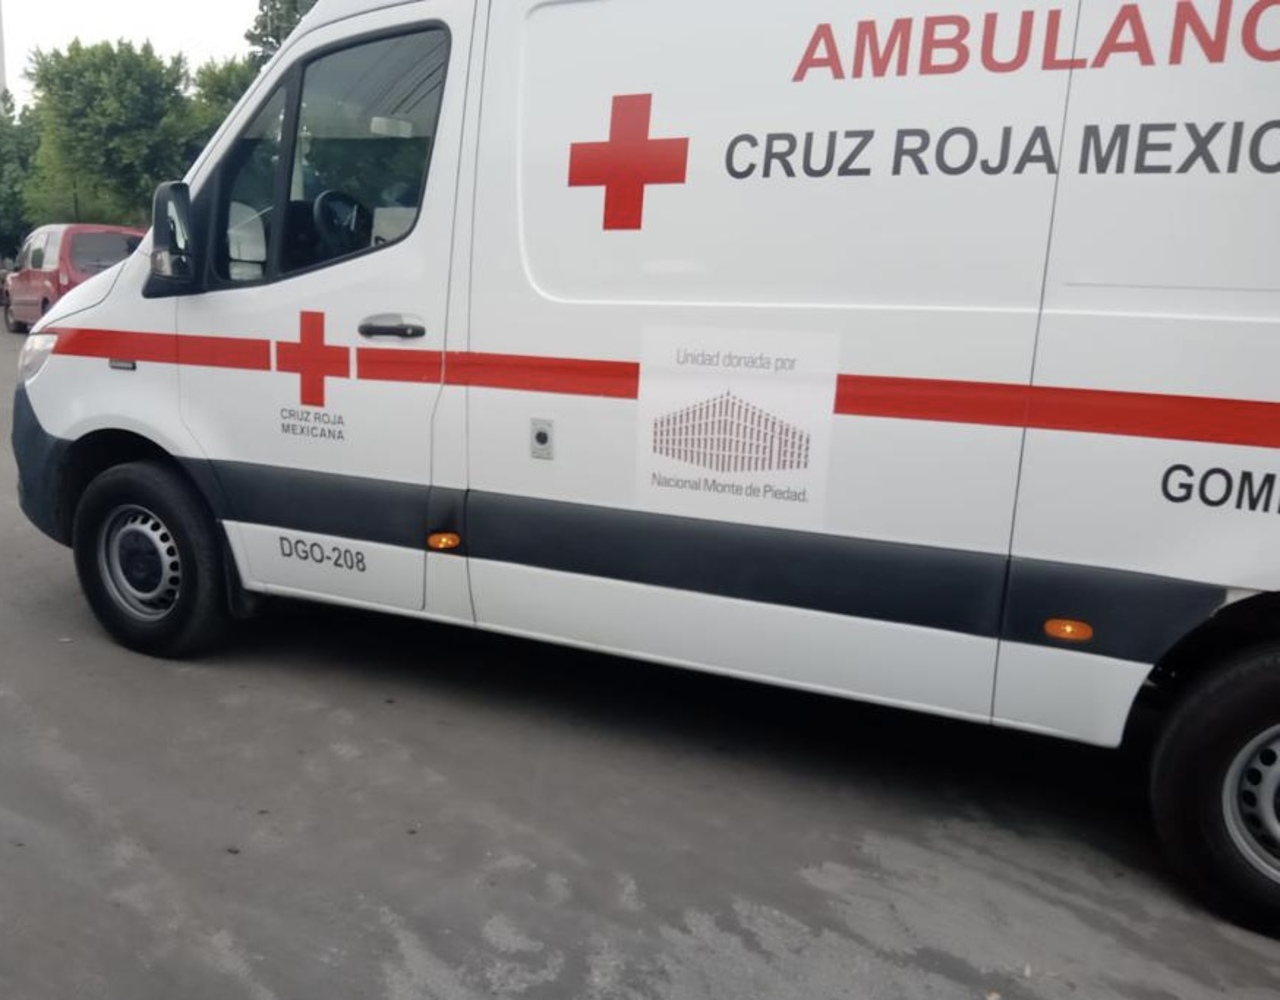 Paramédicos de la Cruz Roja se encargaron de atender a la femenina y la trasladaron a un hospital de la ciudad.